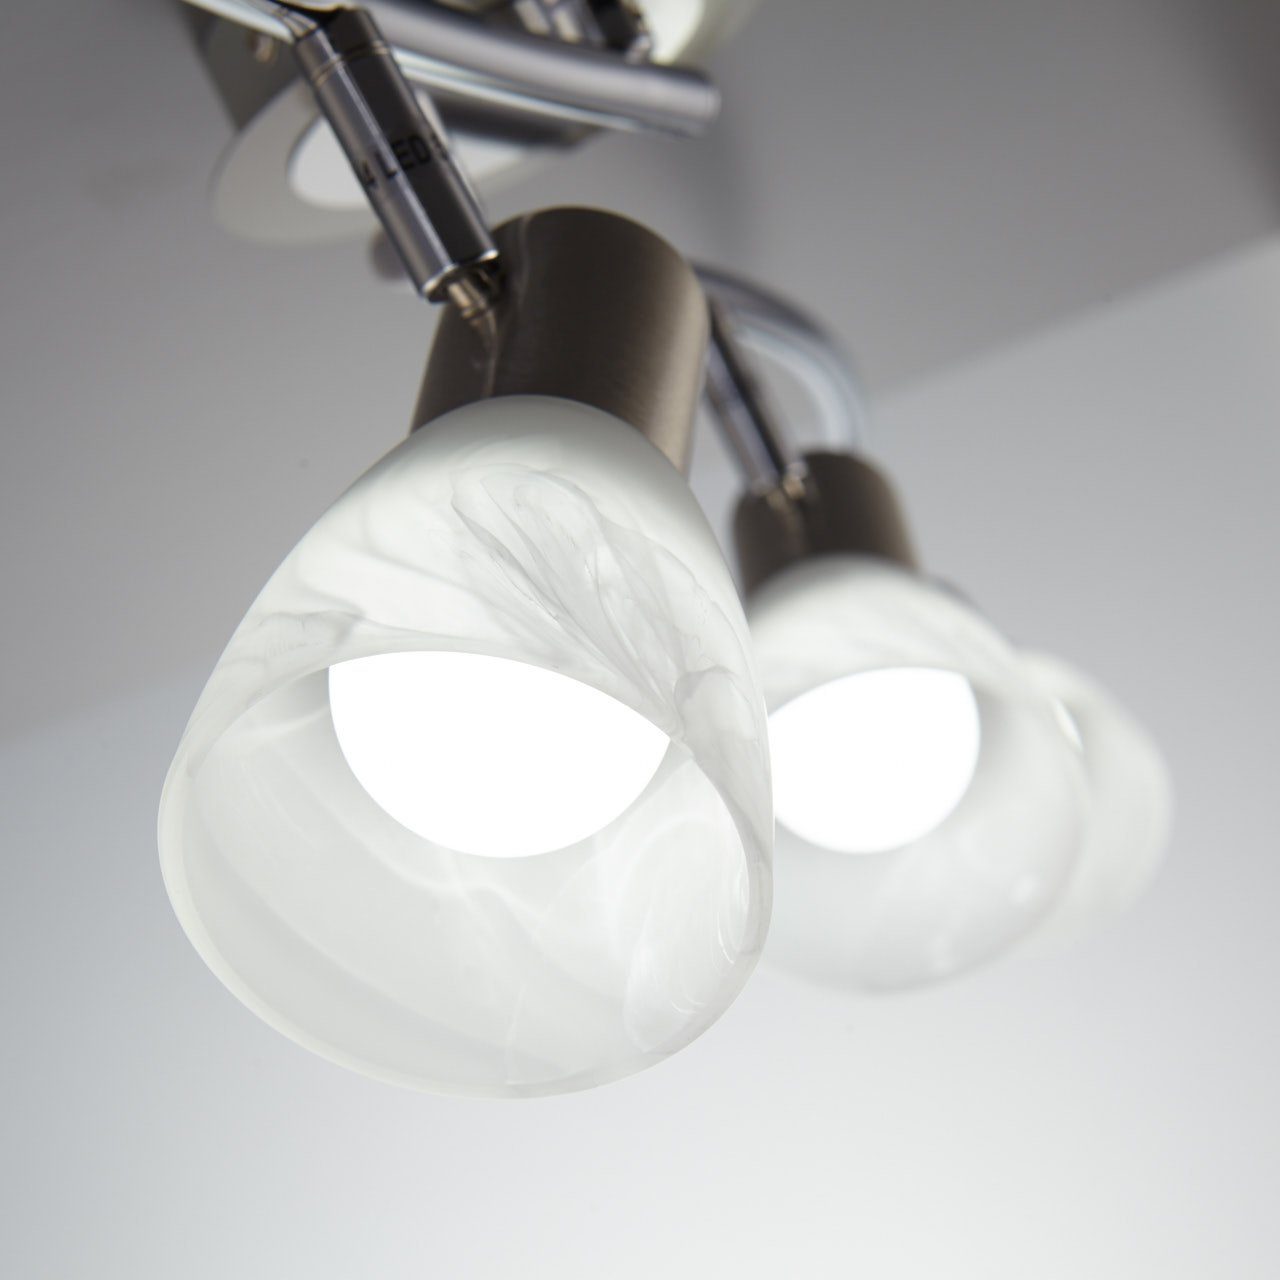 Leuchte Metall LED Deckenstrahler, Glas schwenkbar Leuchtmittel Spot wechselbar, Wohnzimmer B.K.Licht Deckenlampe E14 Warmweiß, LED